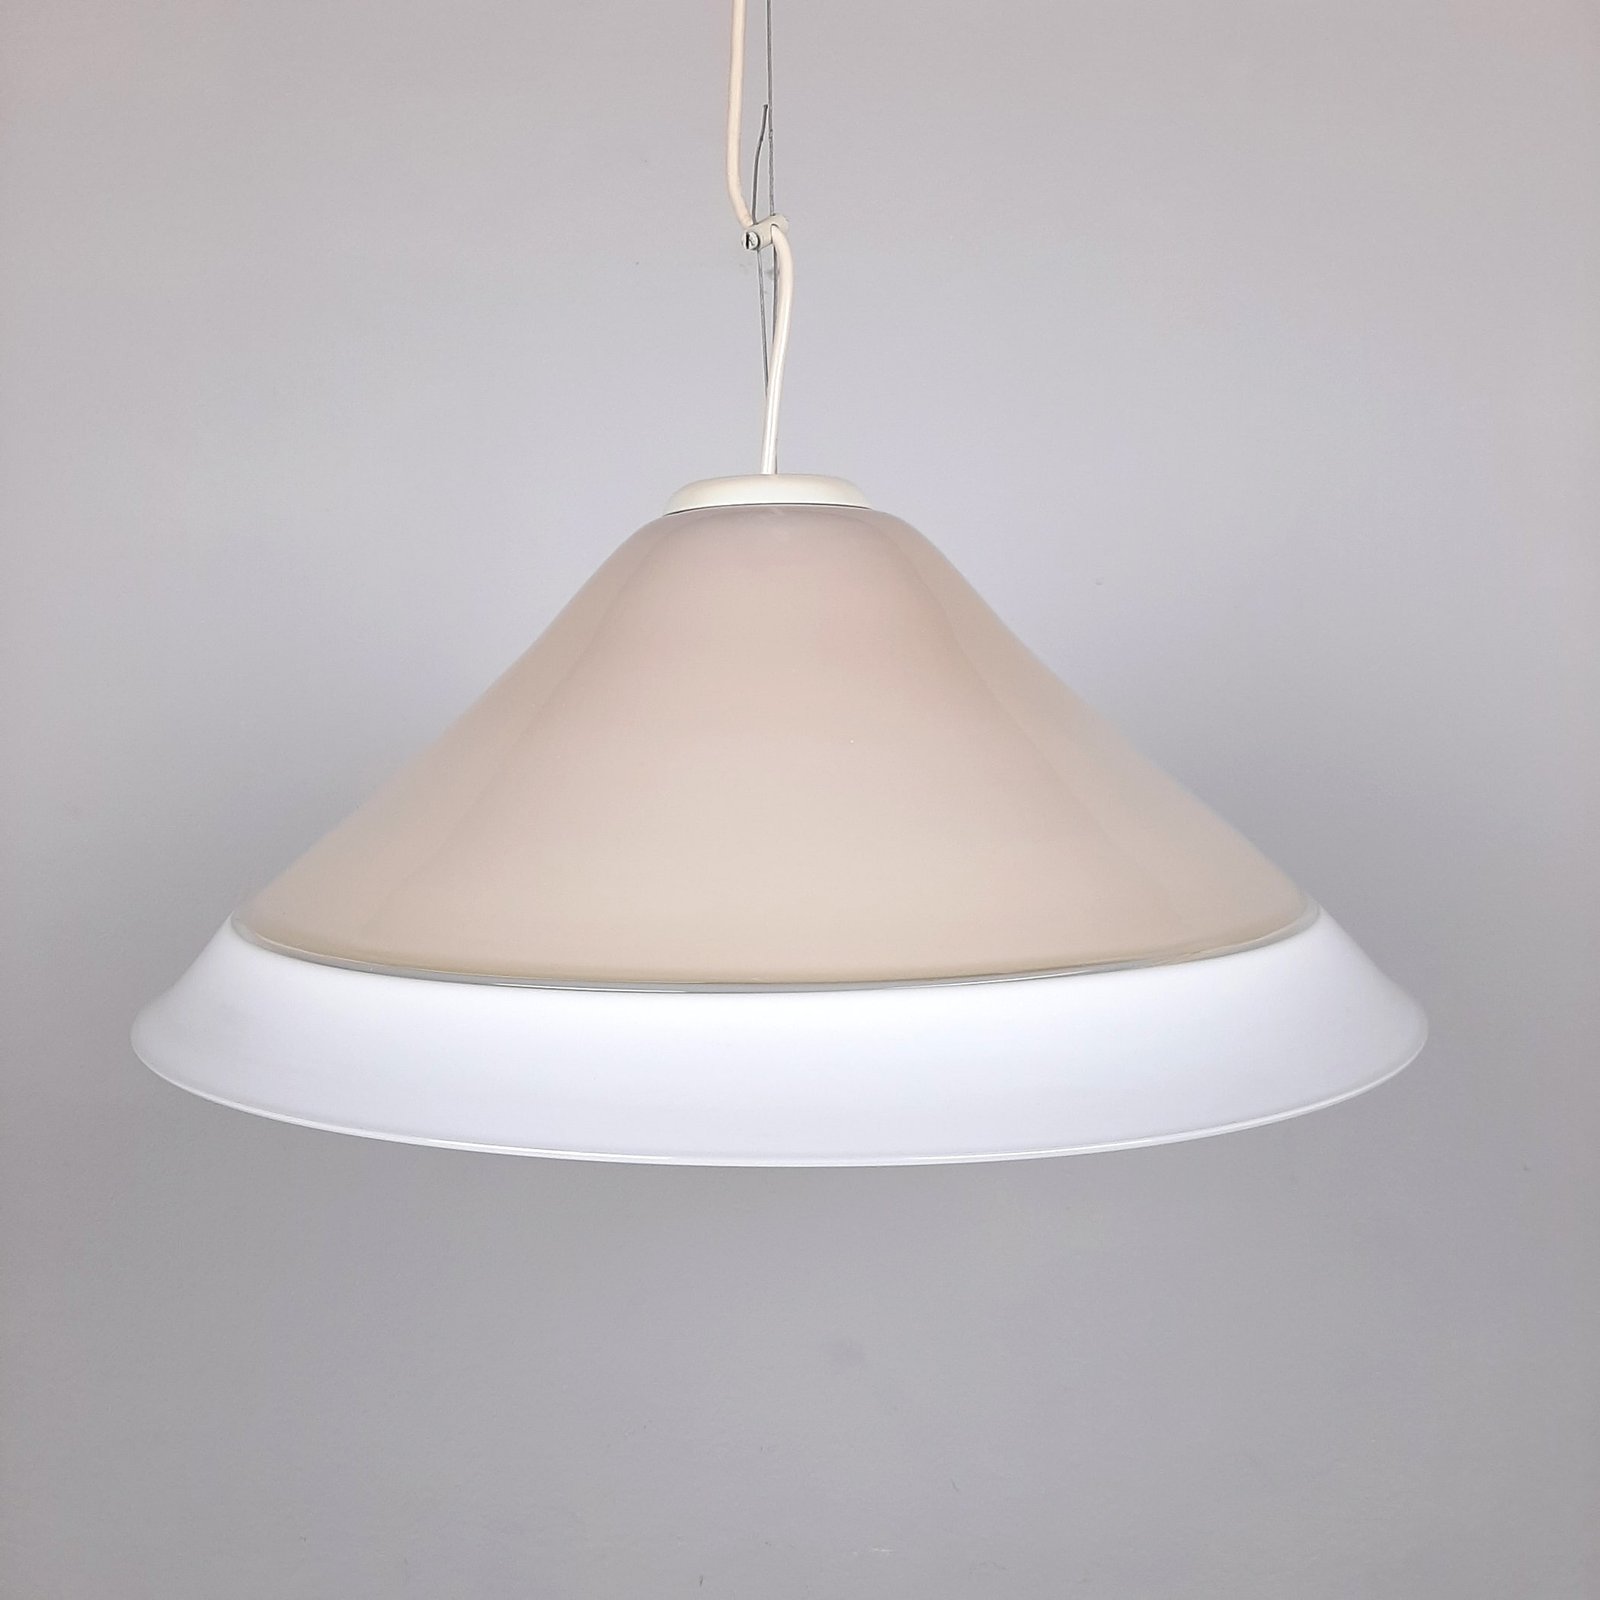 XL Retro murano glass lamp Italy 1970s Beige White Mid-century lighting Vintage murano